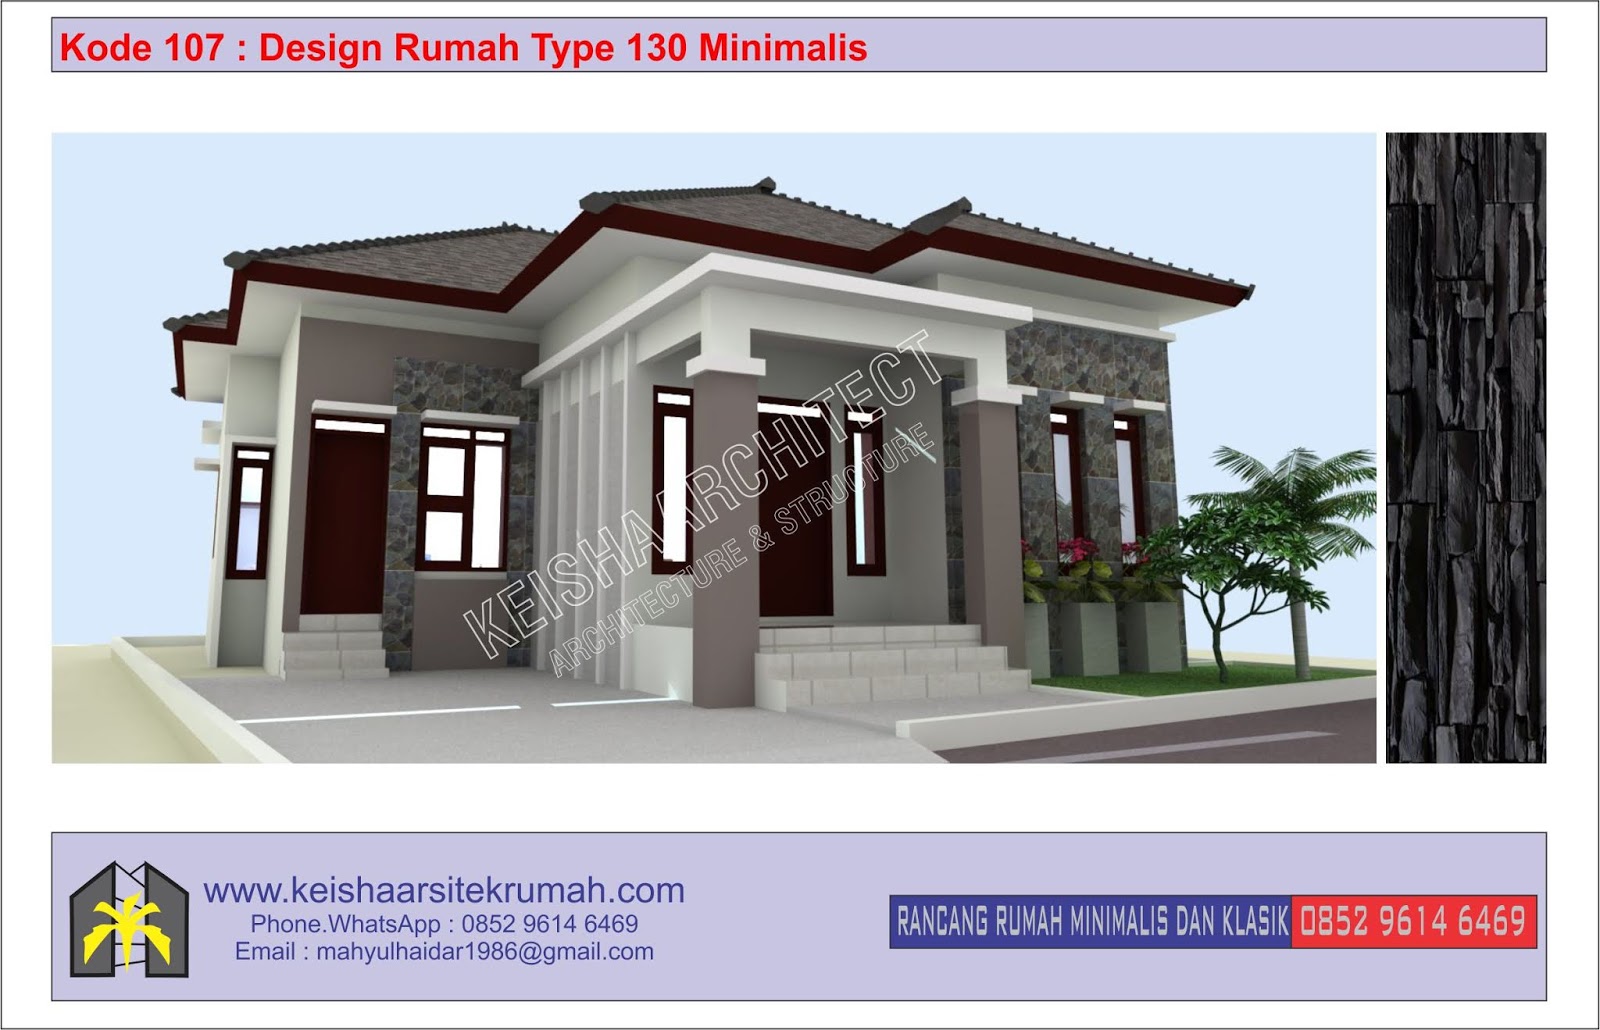 Kode 107 Design Rumah Type 130 Lokasi Ulee Kareng Banda Aceh Desain Rumah Minimalis Klasik Dan Rab Tahun 2020 Wwwkeishaarsitekrumahcom